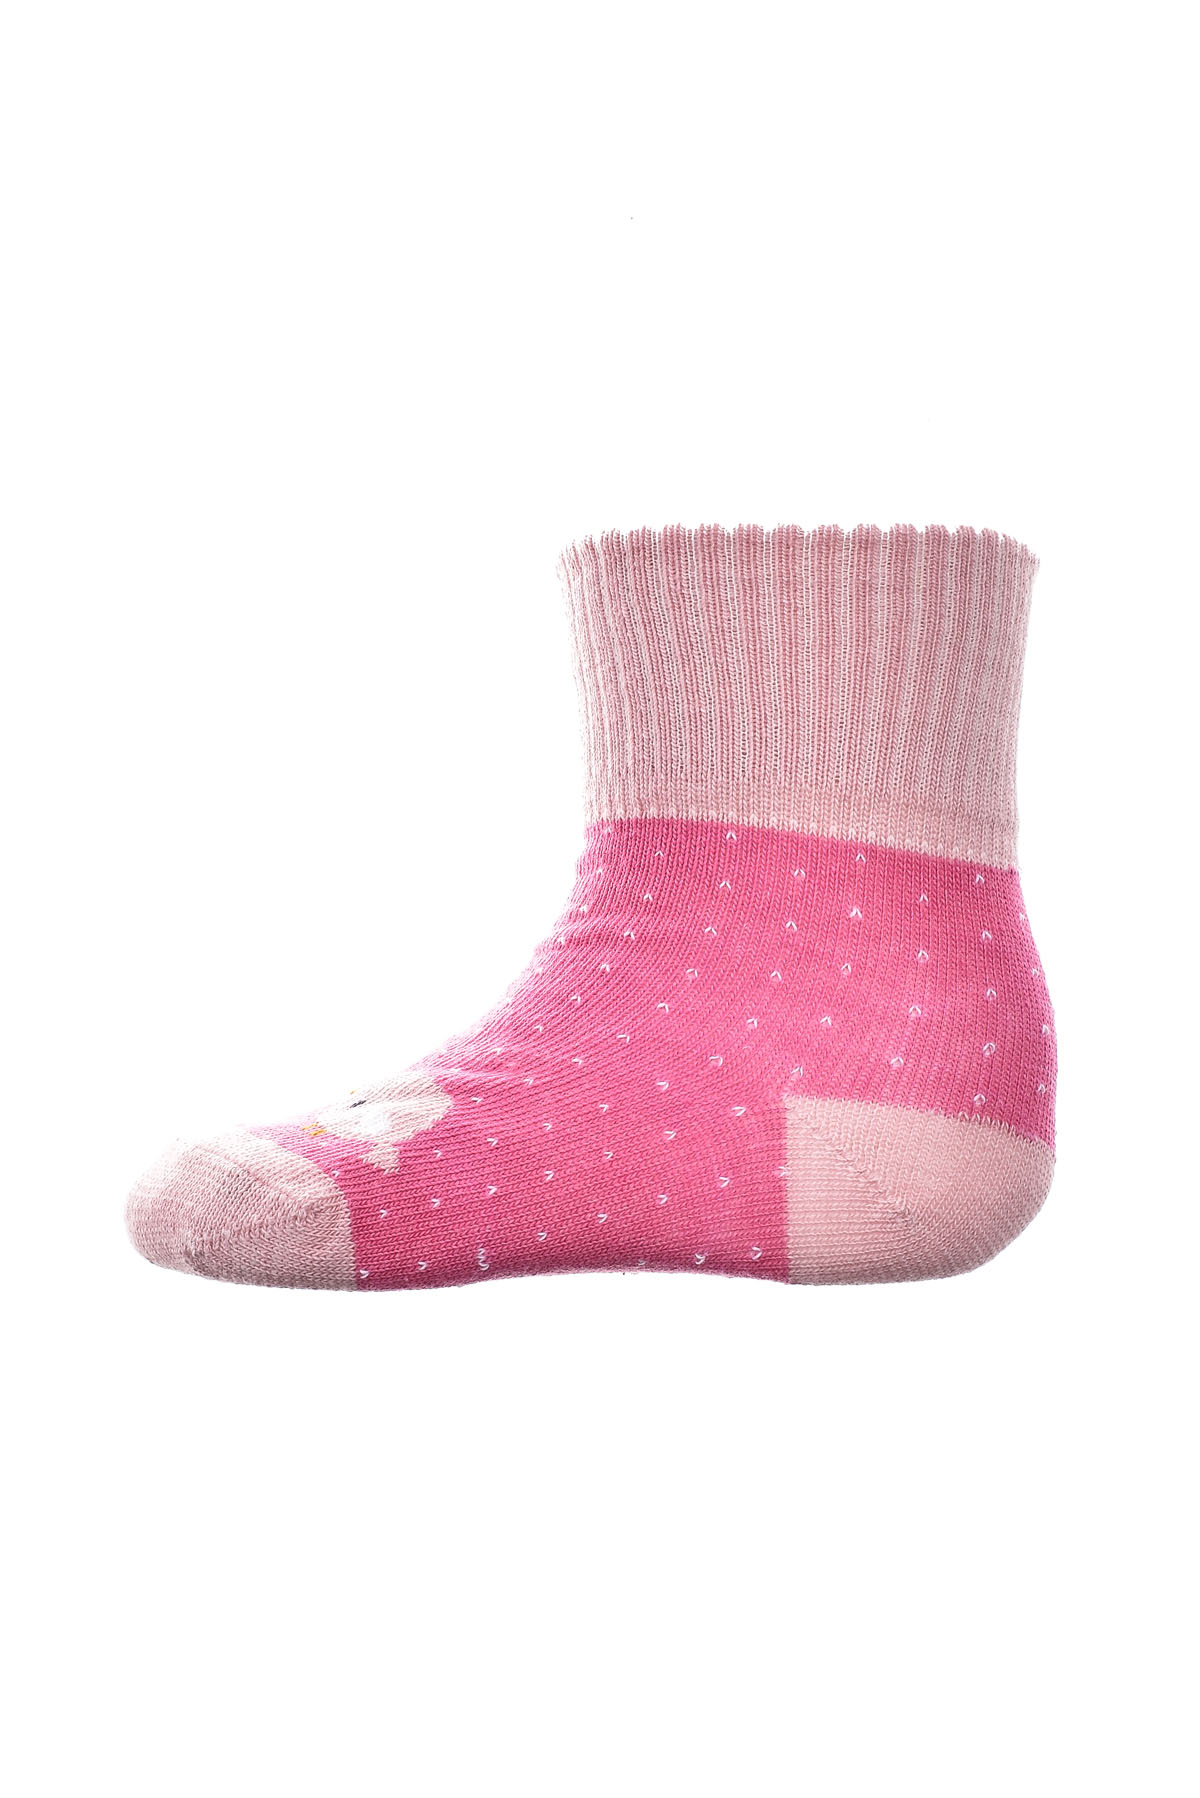 Baby socks - BebeLino - 0